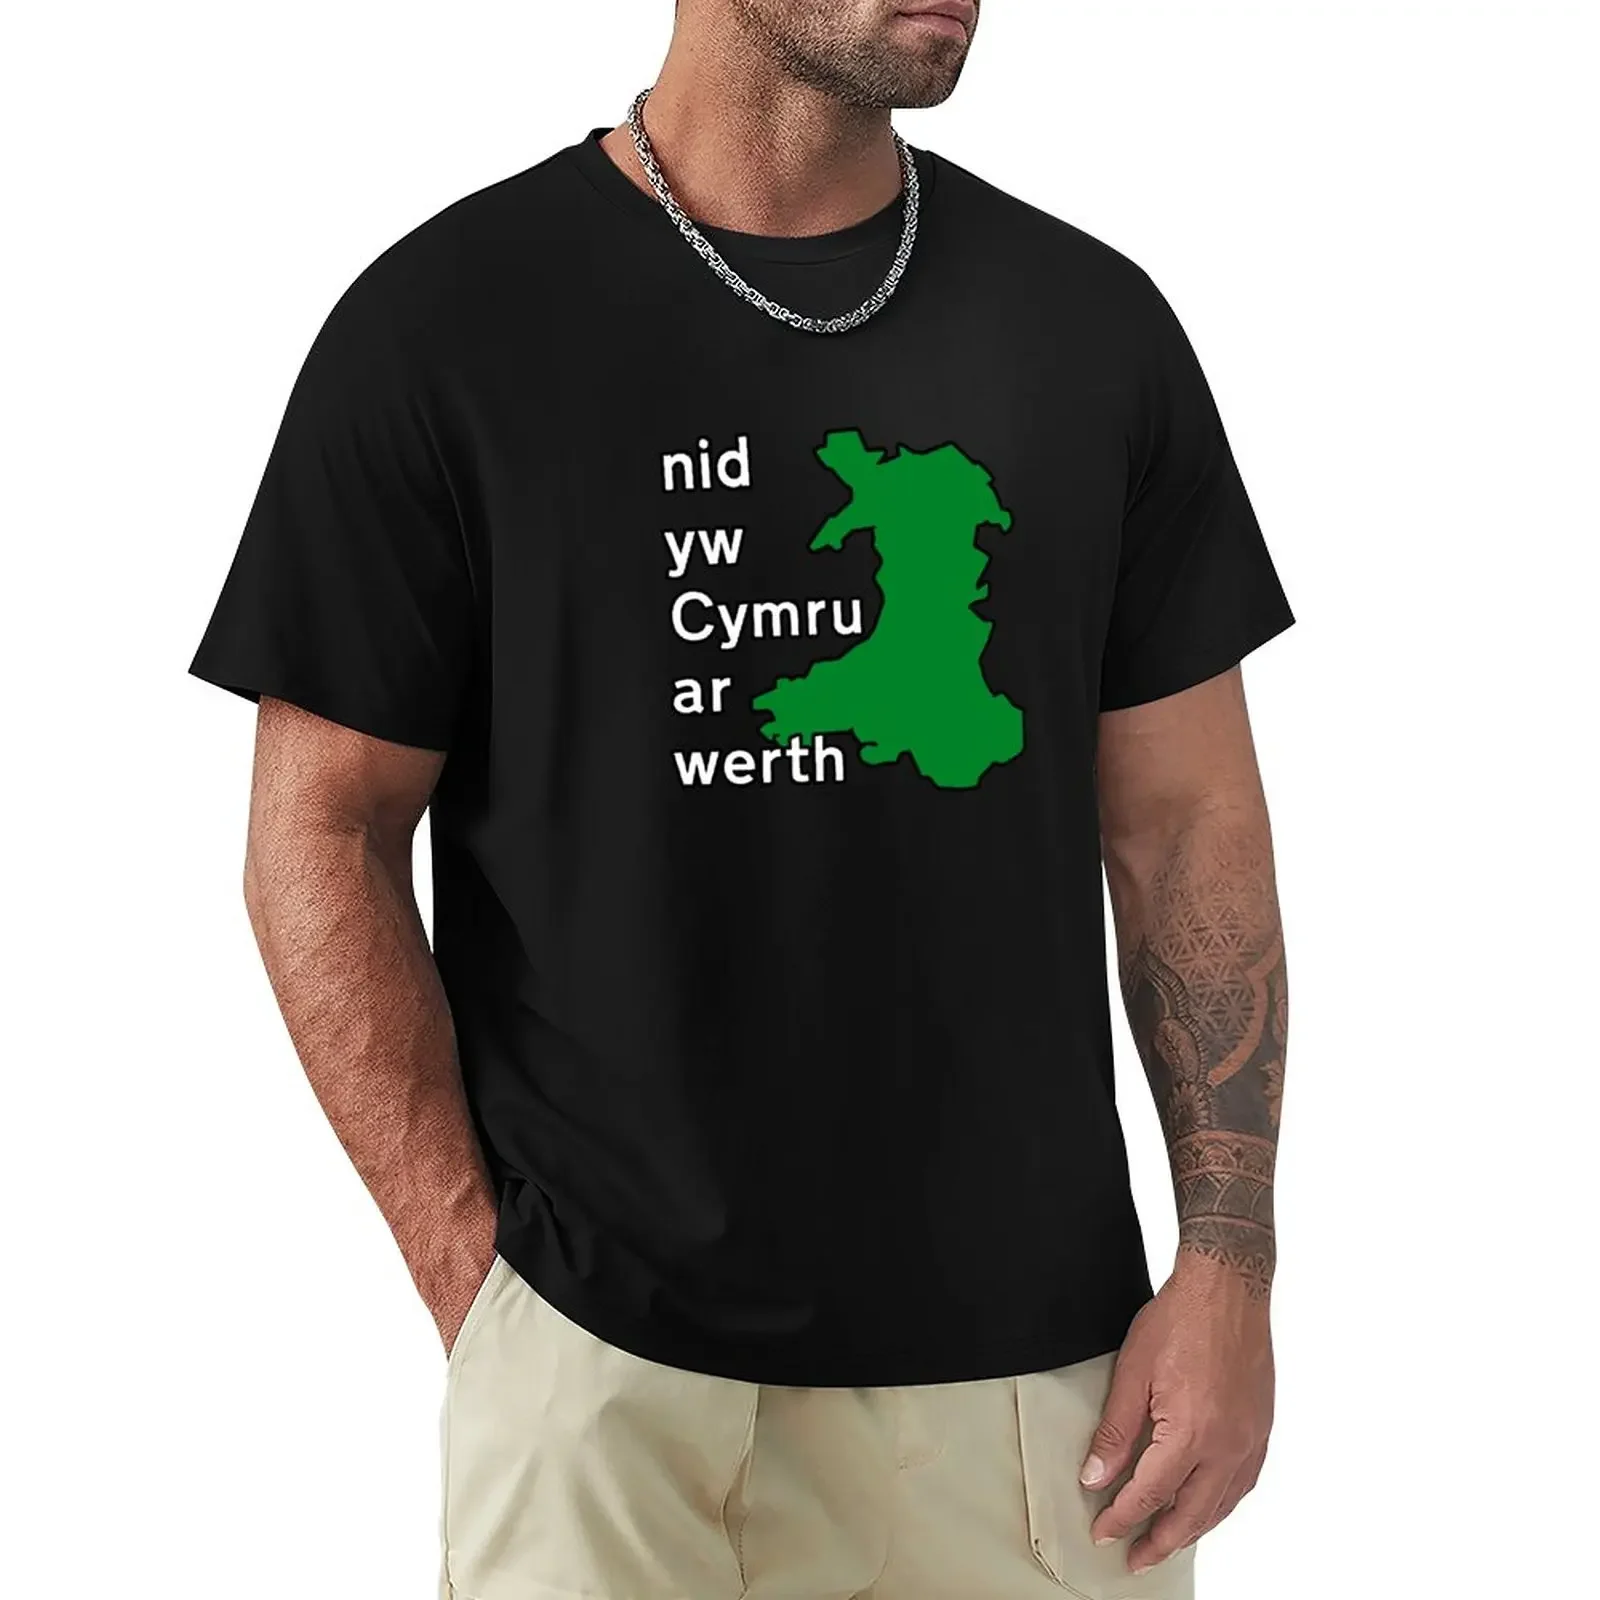 

Футболка с аниме низом Yw Cymru Ar Werth, мужские футболки из хлопка